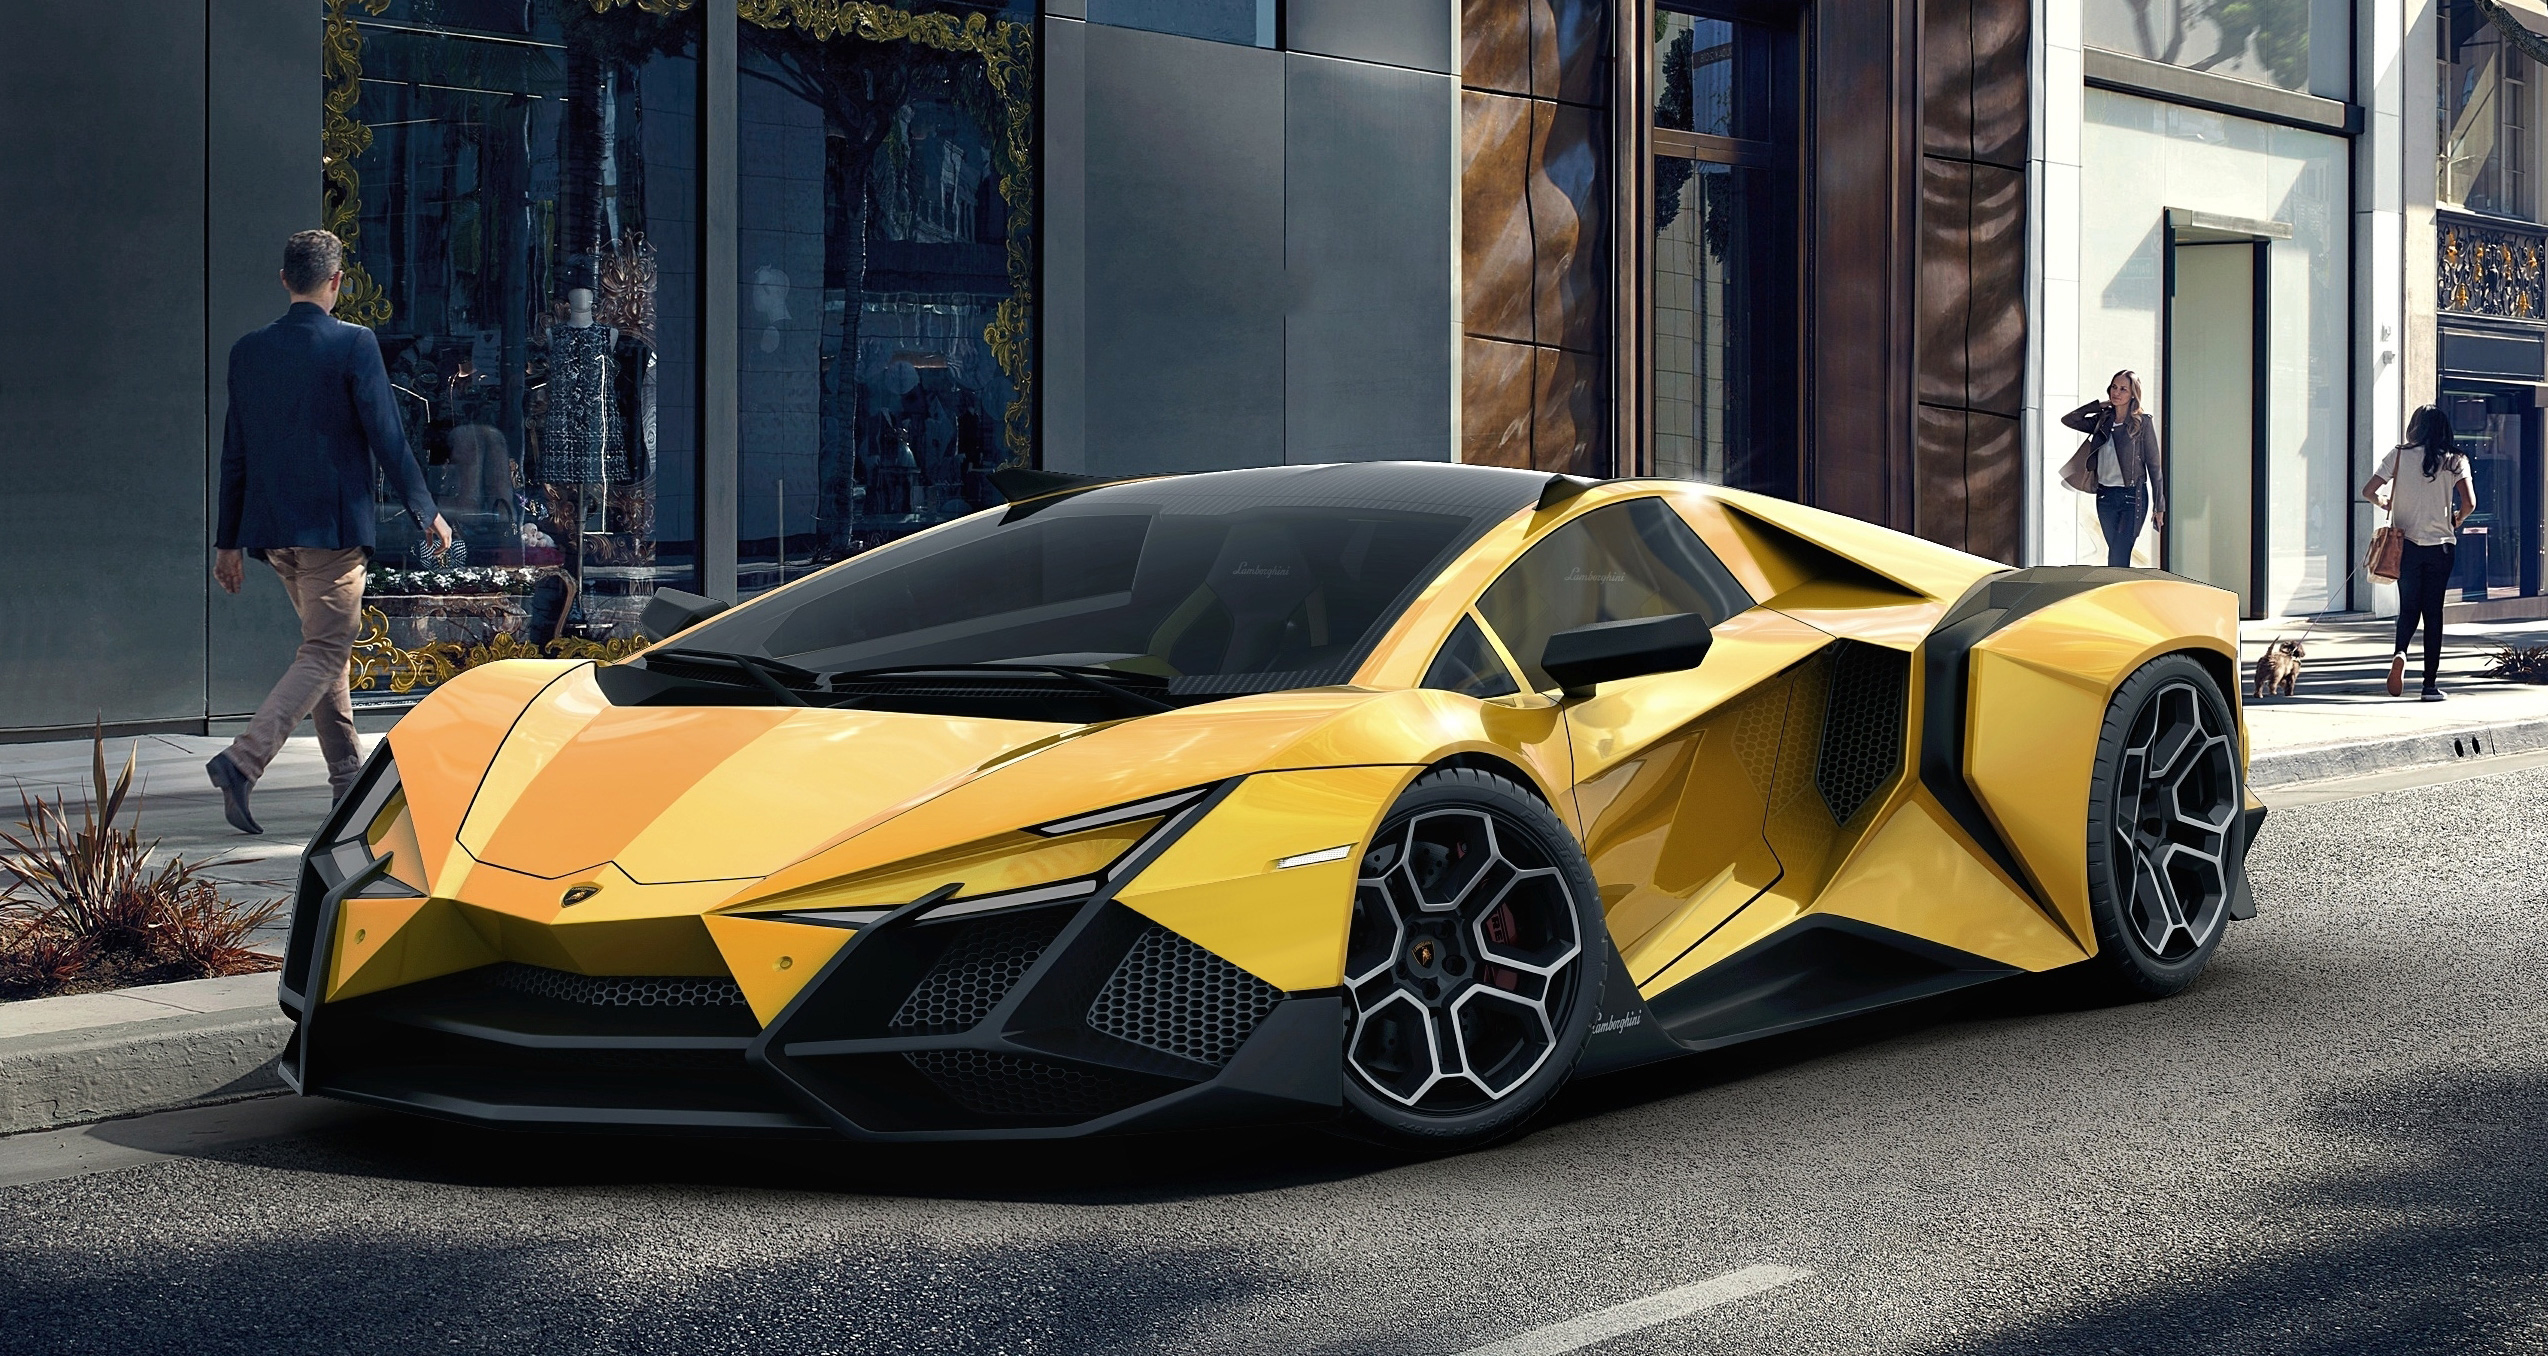 Lamborghini Forsennato, HD Cars, 4k Wallpaper, Image, Background, Photo and Picture